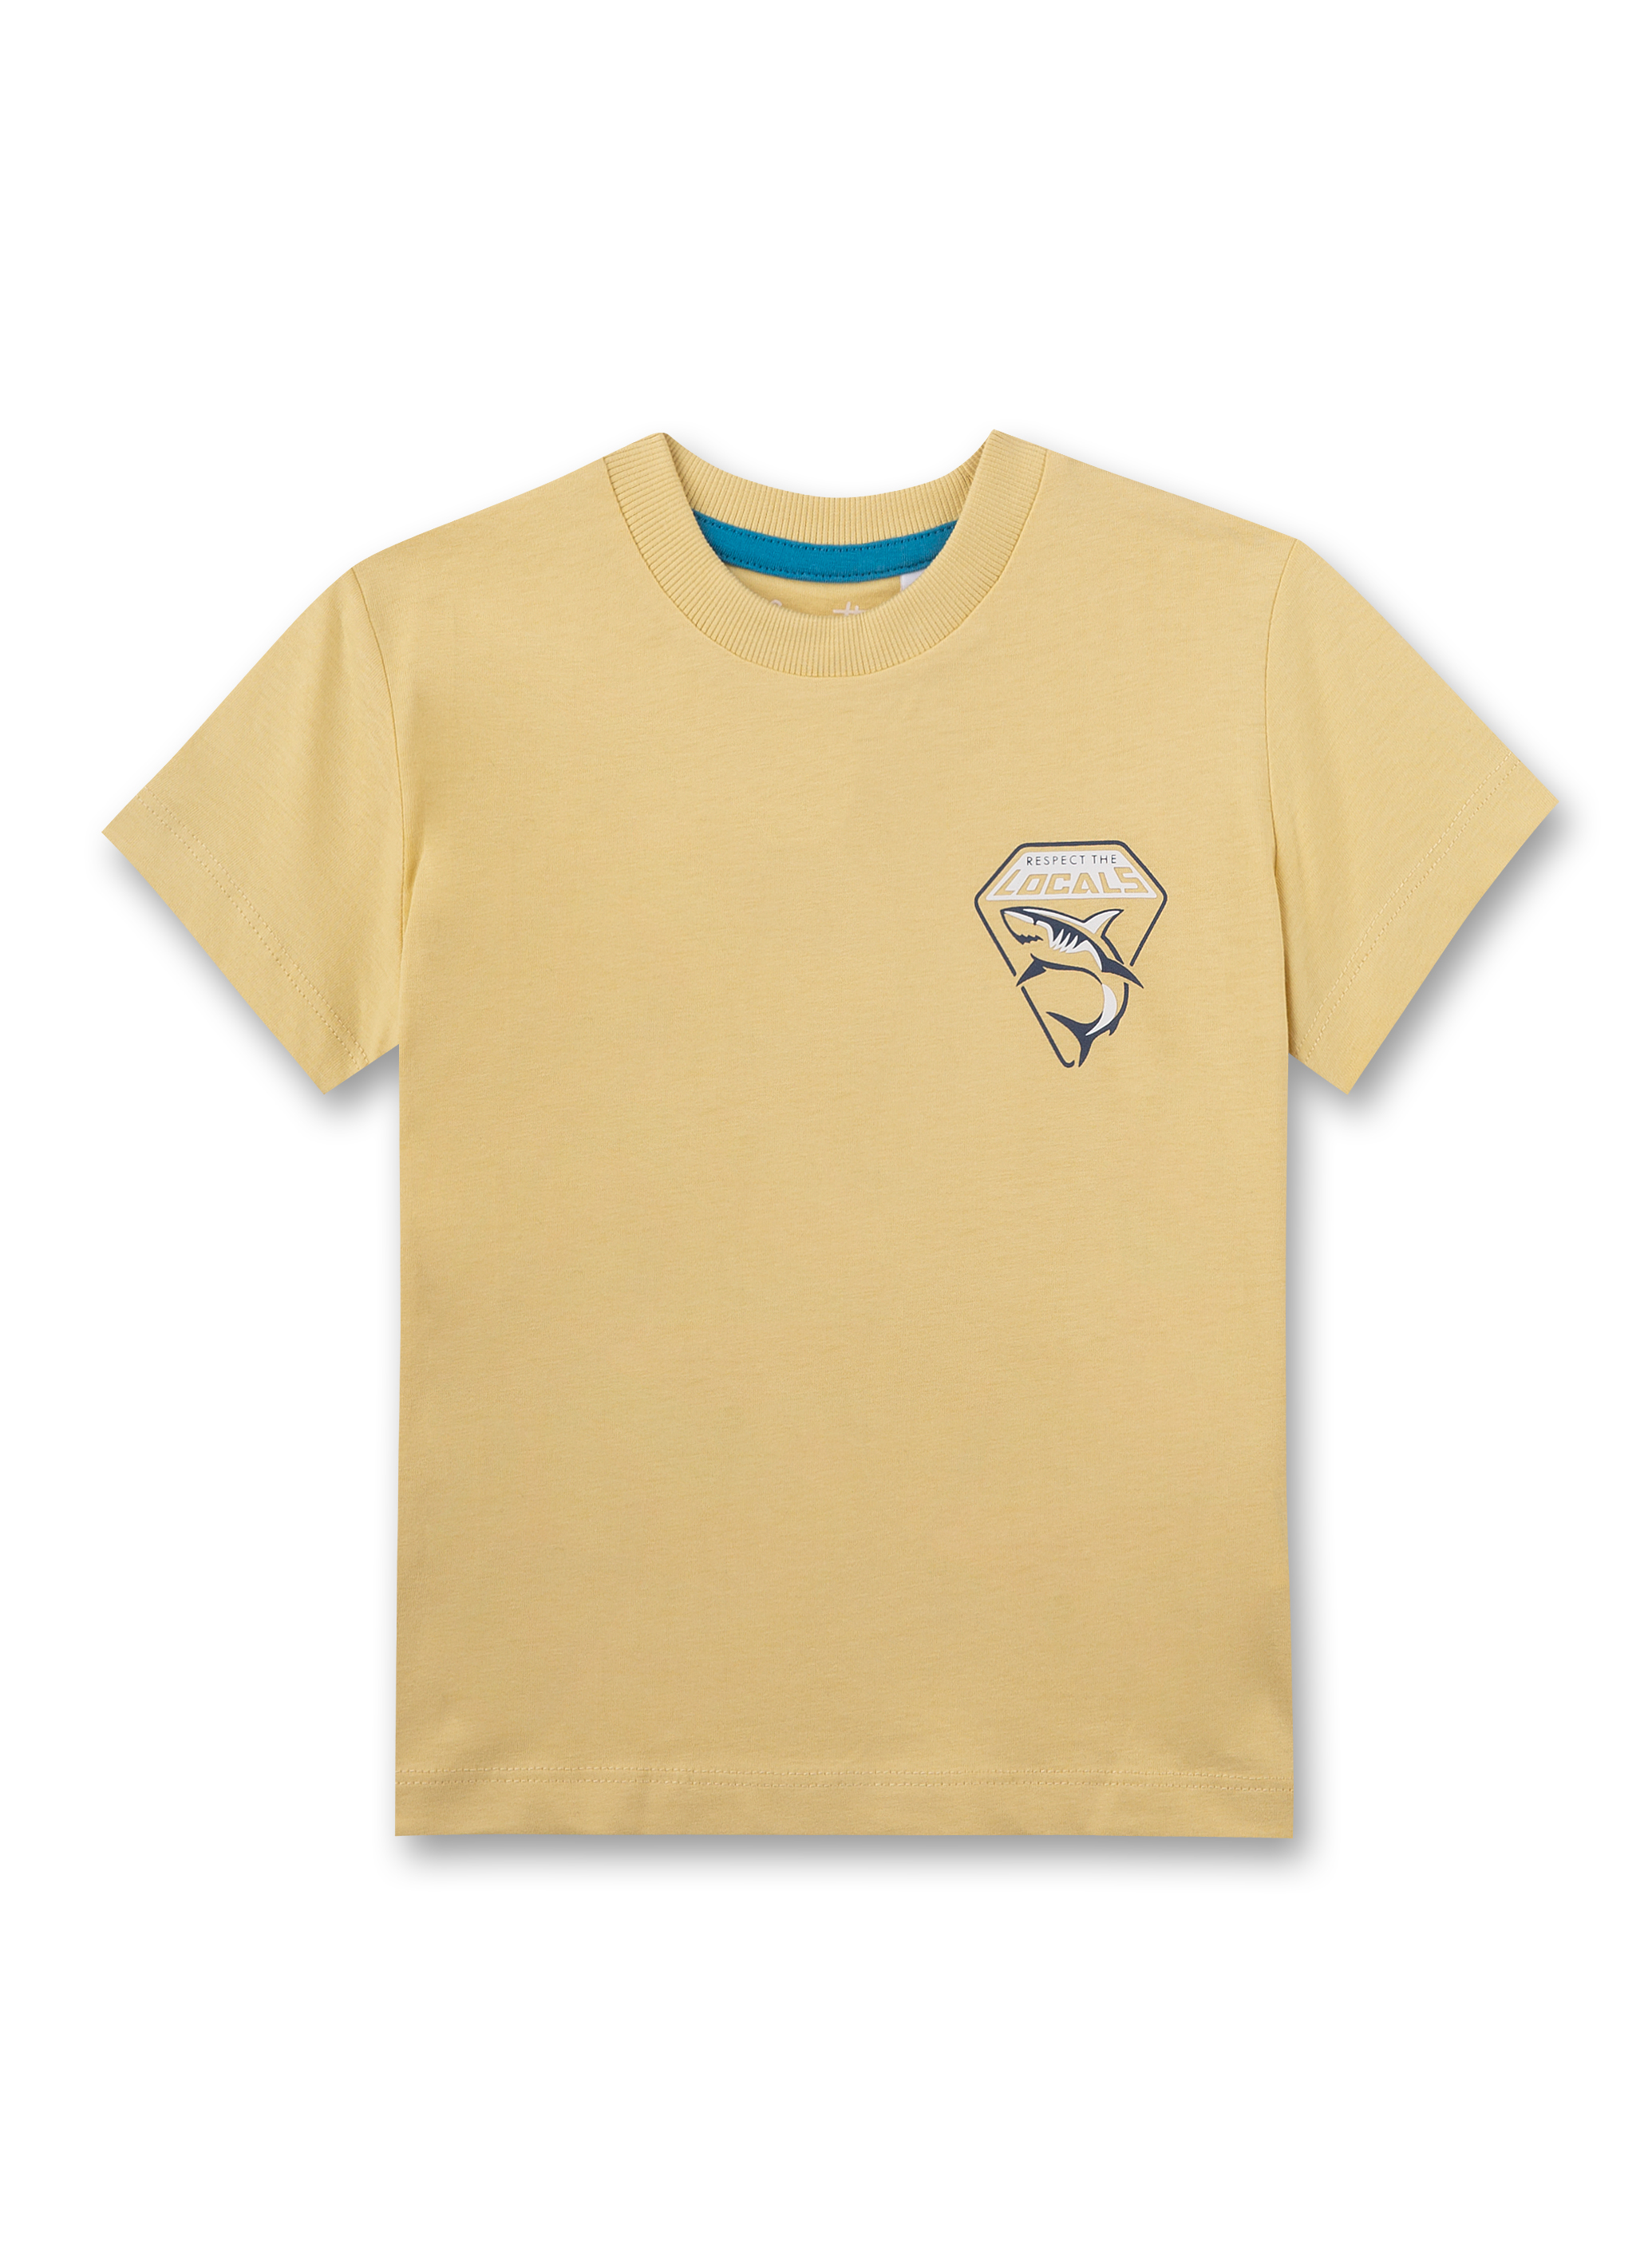 Jungen T-Shirt Gelb